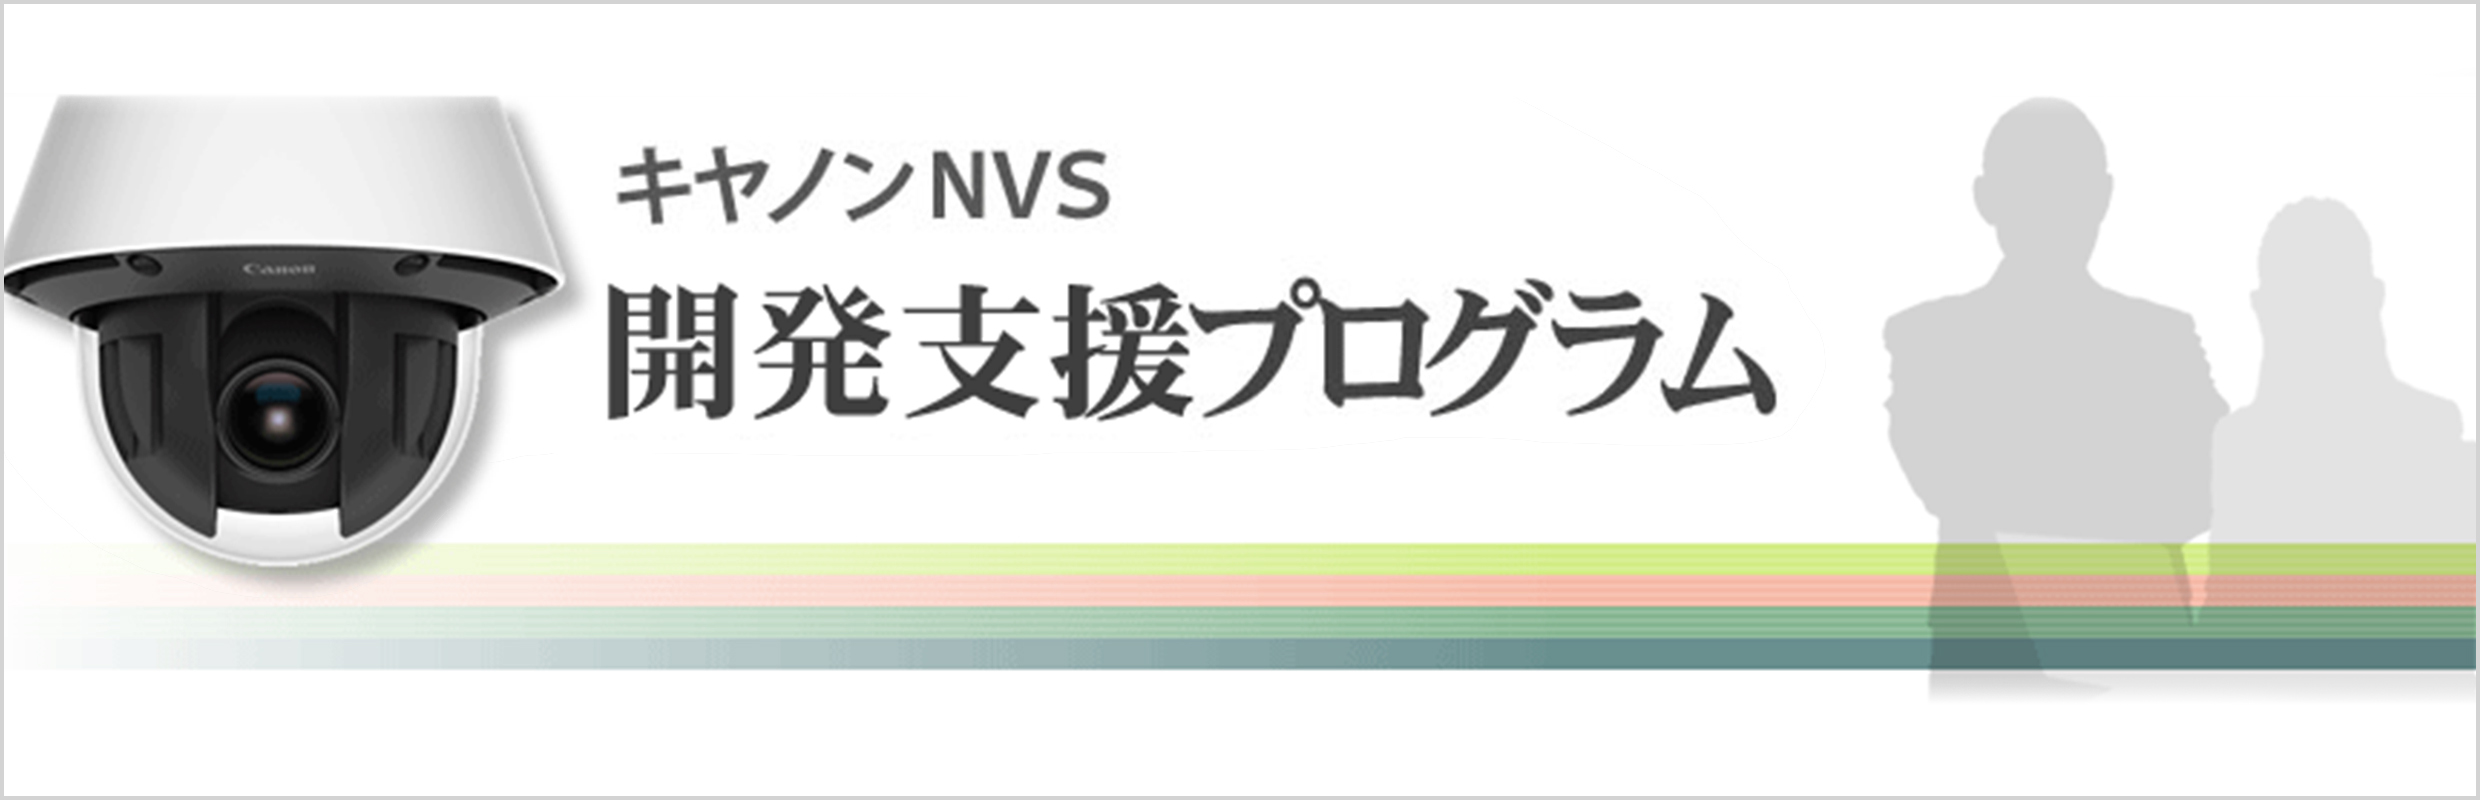 キヤノンNVS 開発支援プログラム 概要｜ネットワークカメラ｜キヤノン